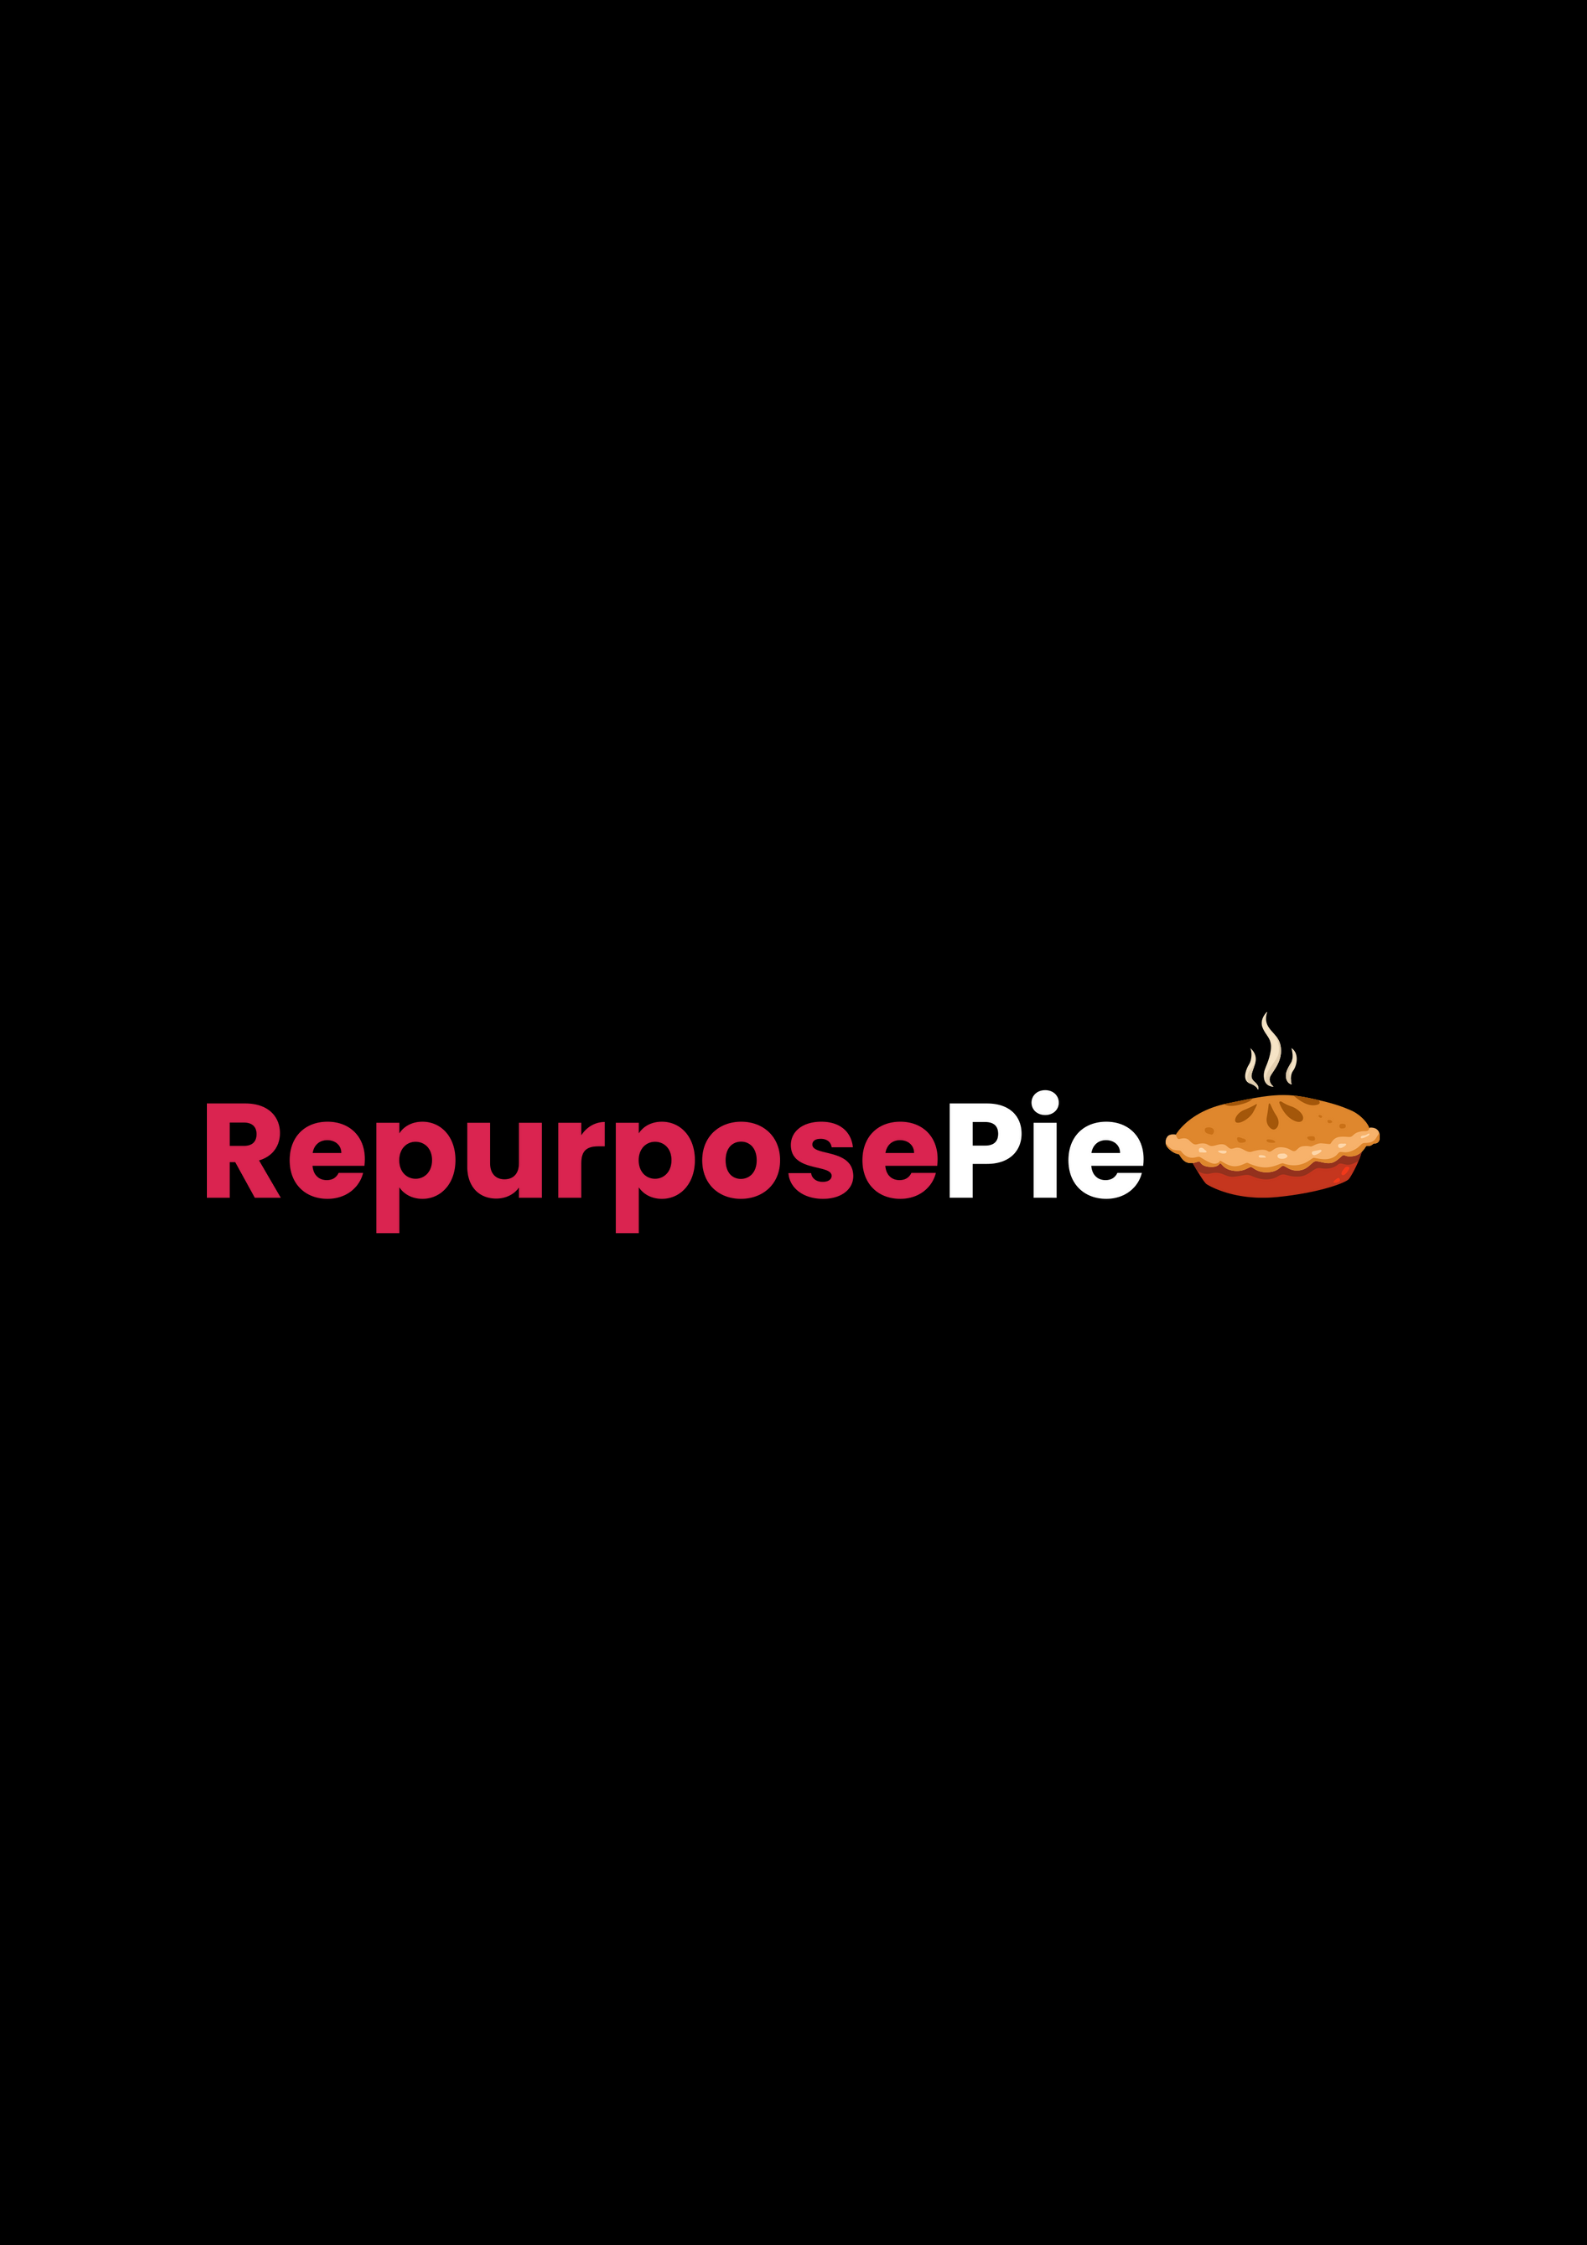 Repurpose Pie logo